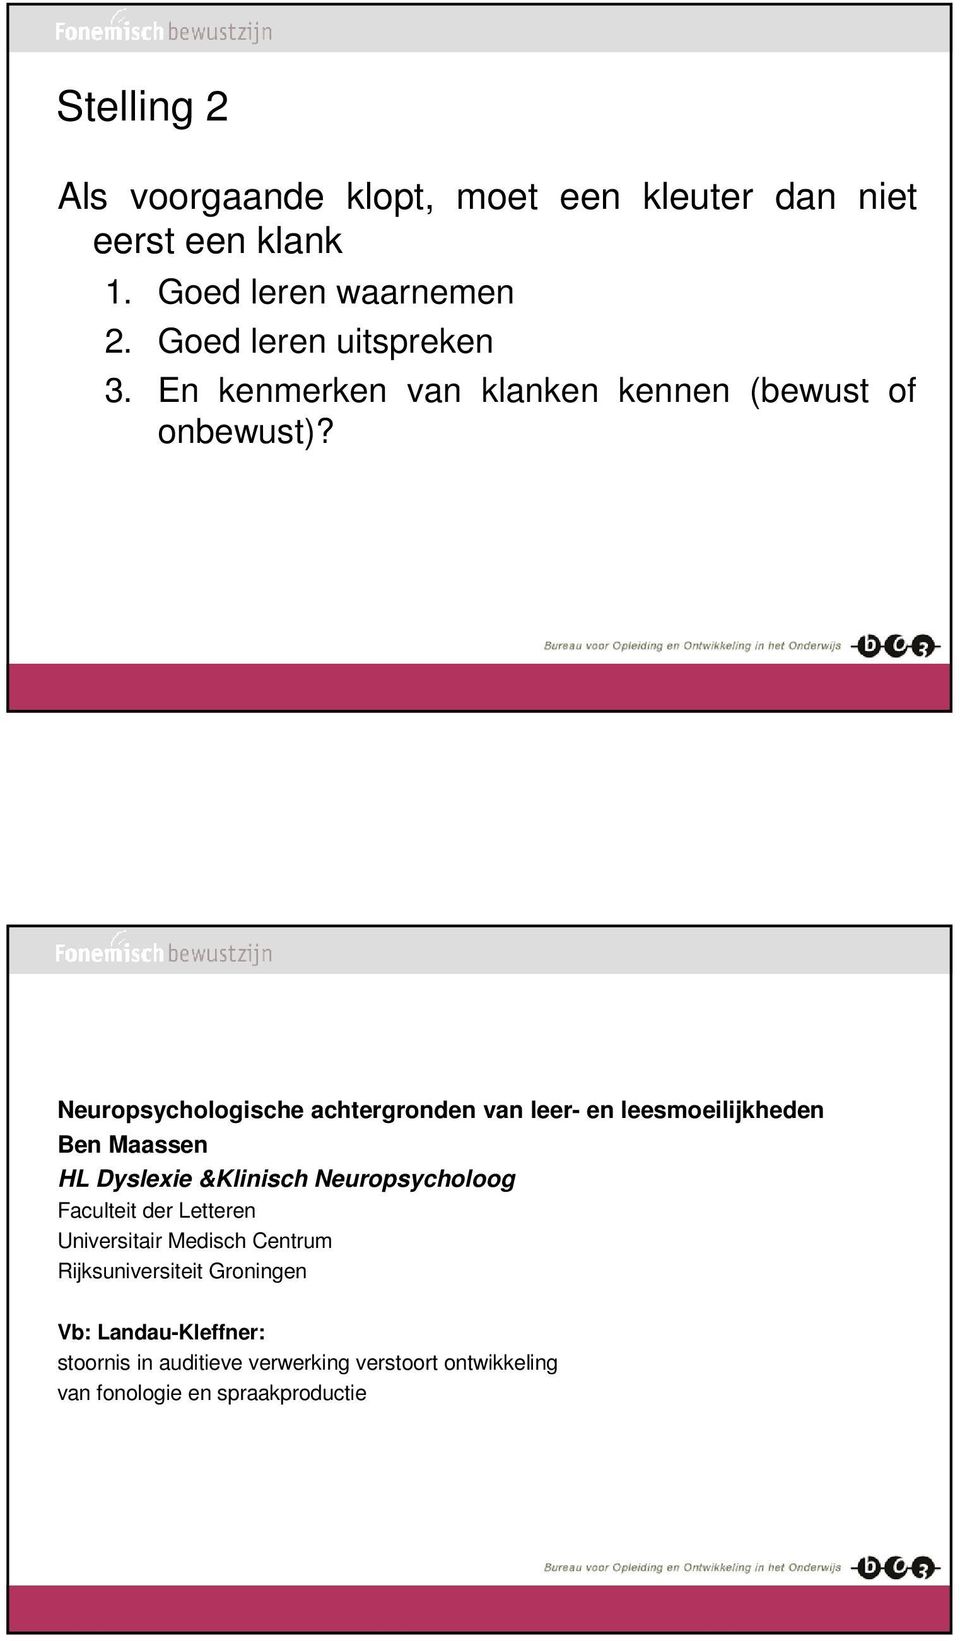 Neuropsychologische achtergronden van leer- en leesmoeilijkheden Ben Maassen HL Dyslexie &Klinisch Neuropsycholoog